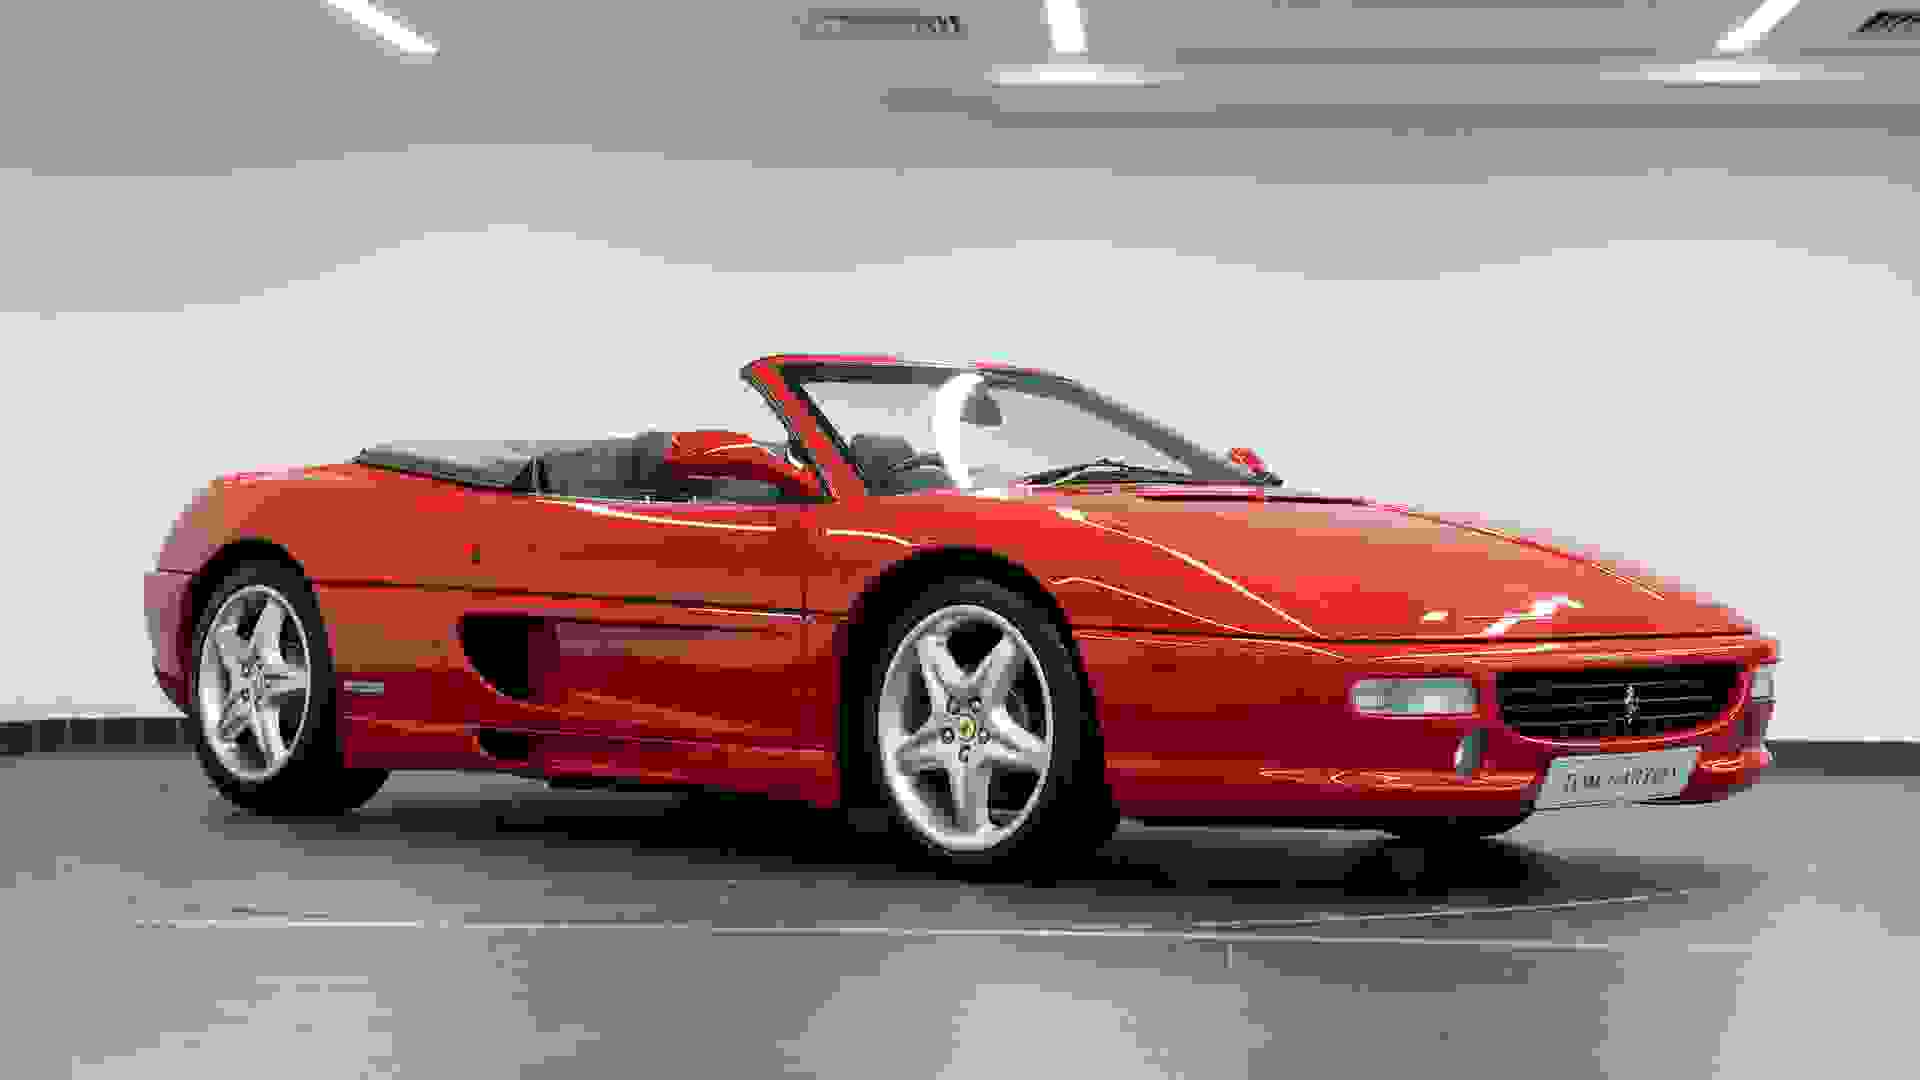 Ferrari 355 Photo 0274ca19-f508-4fd3-9198-562a058f08fc.jpg